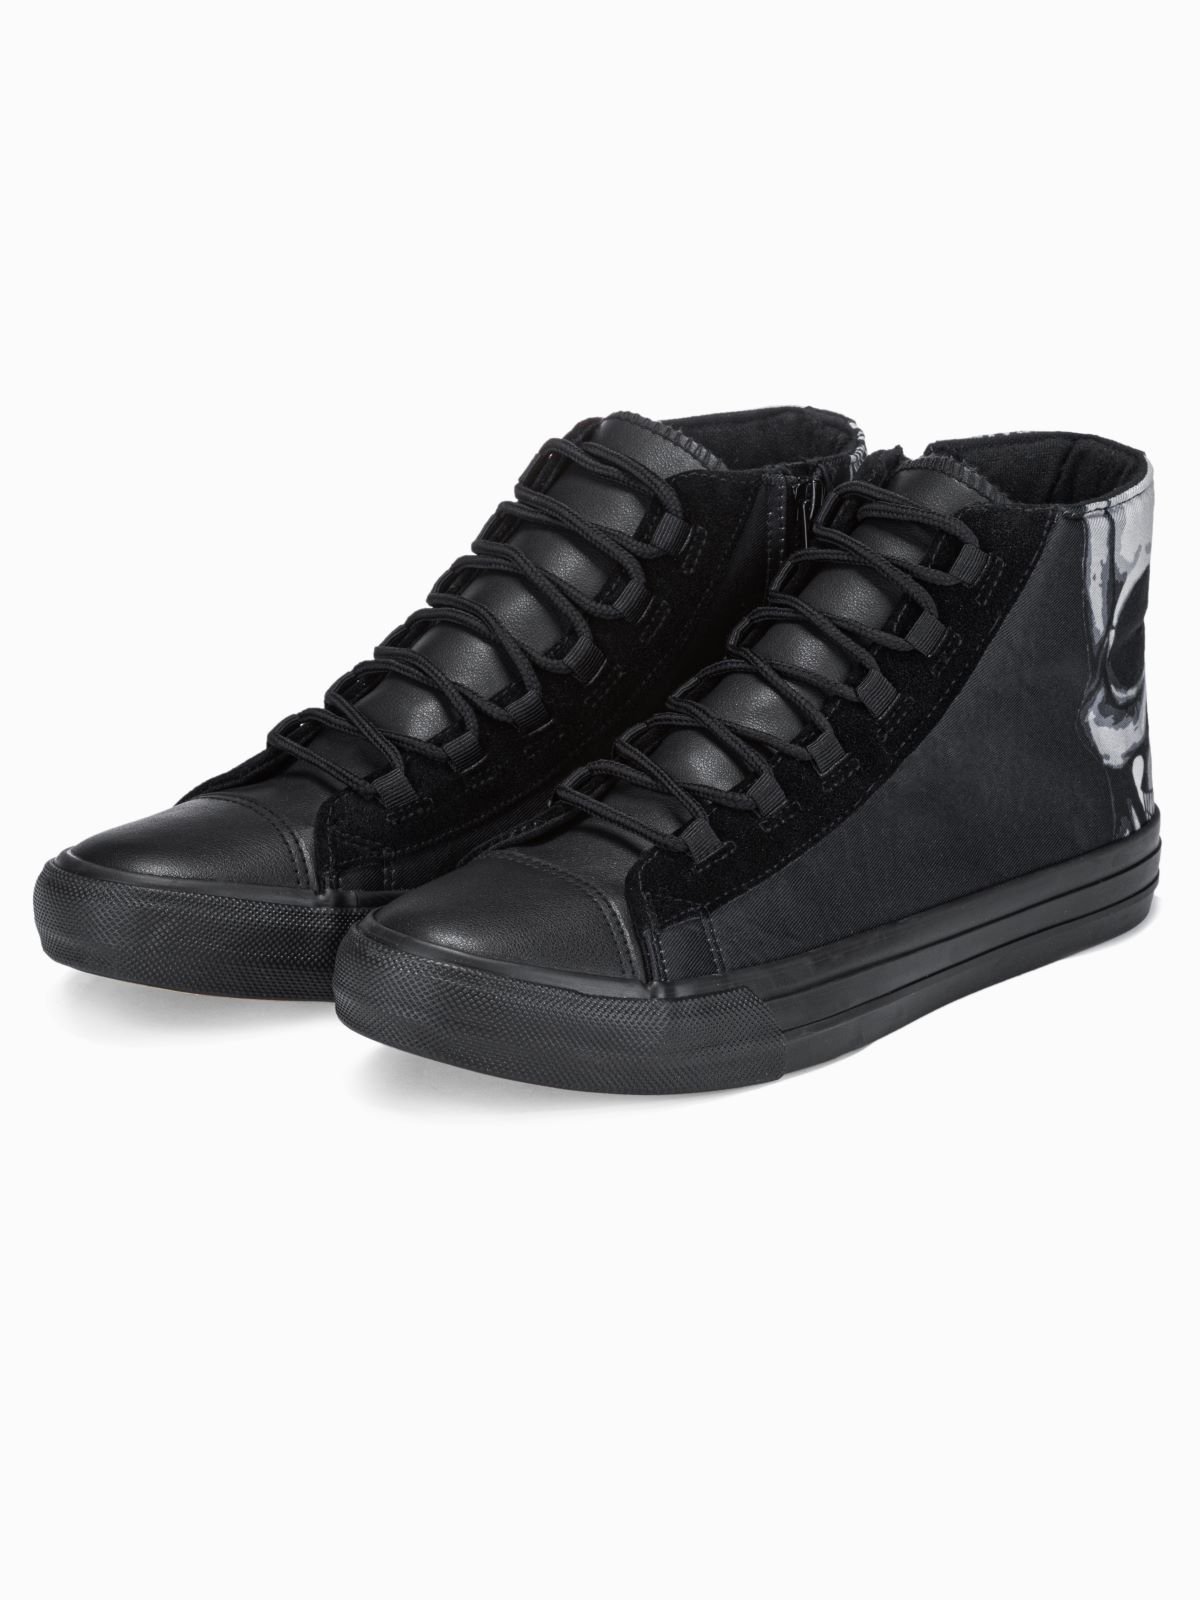 Men's ankle shoes T347 - black | MODONE wholesale - Clothing For Men